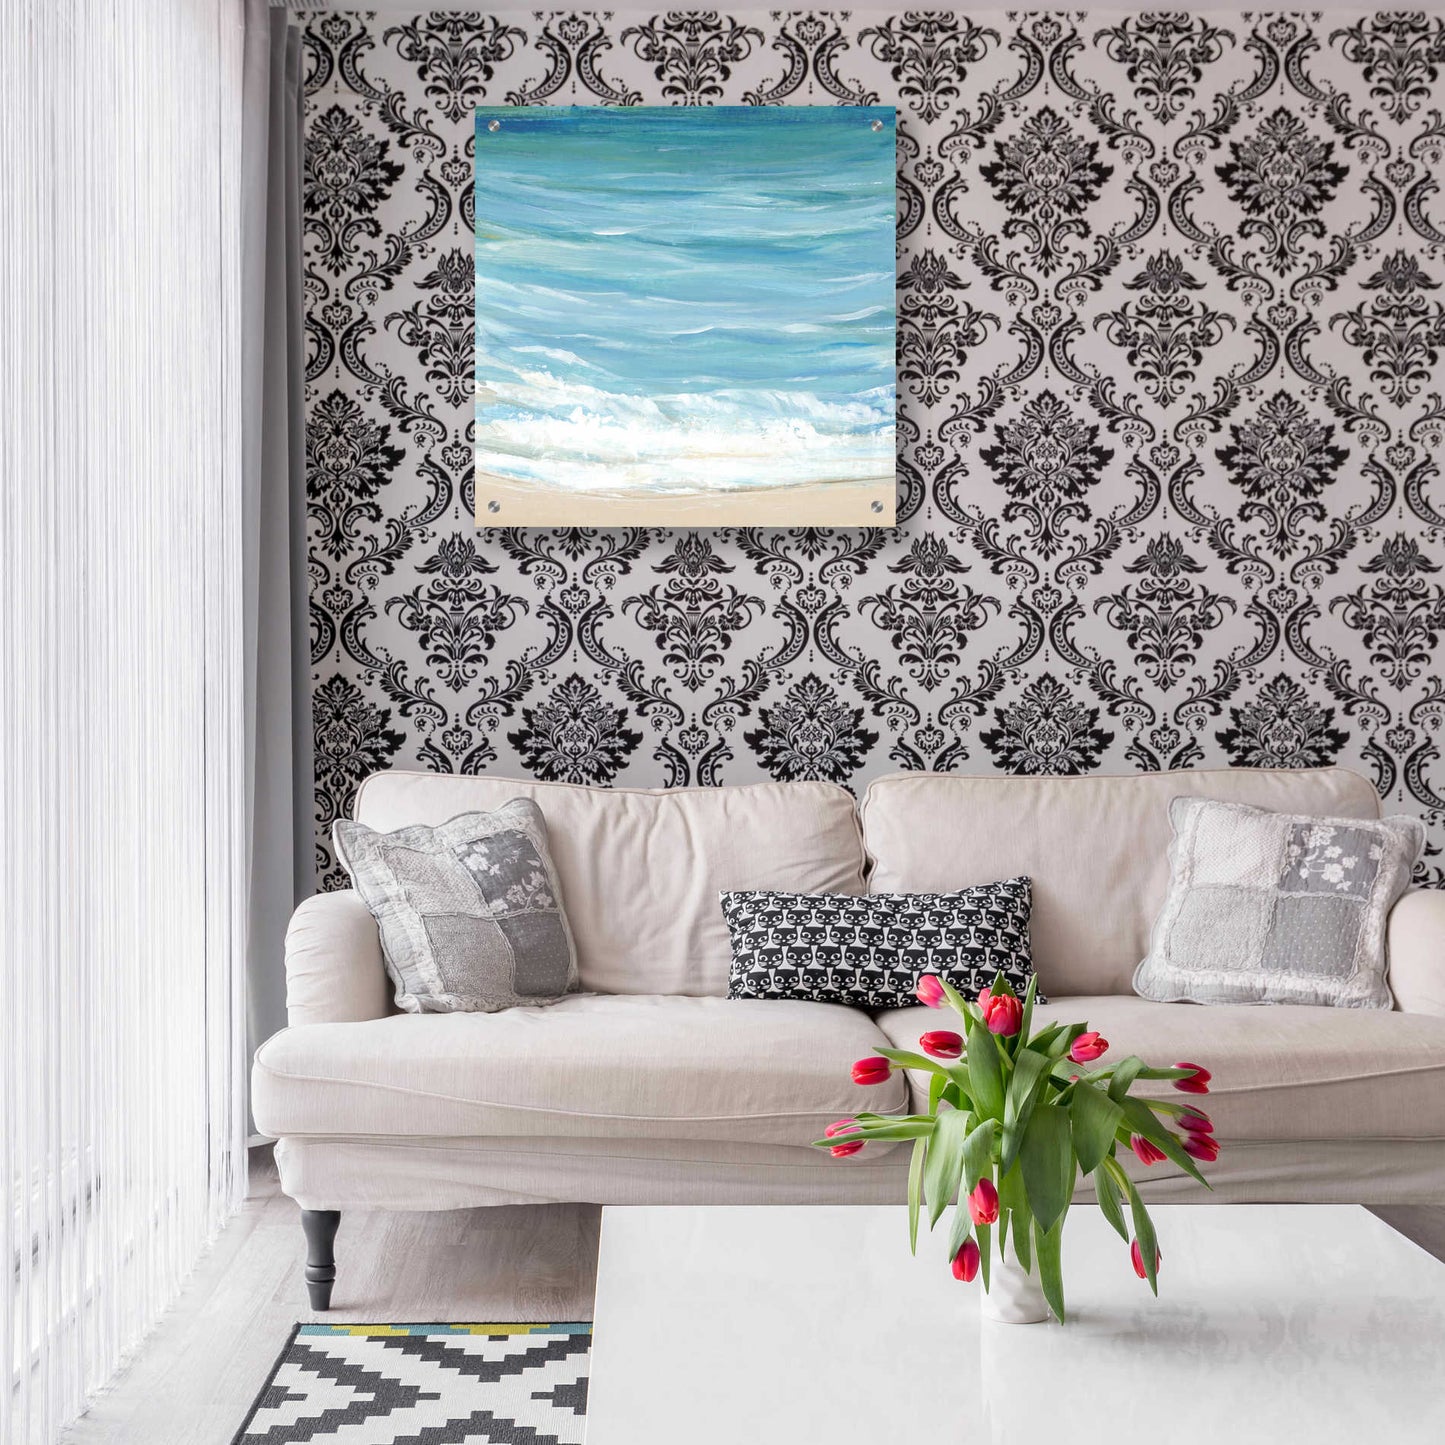 Epic Art 'Sea Breeze Coast I' by Tim O'Toole, Acrylic Glass Wall Art,24x24